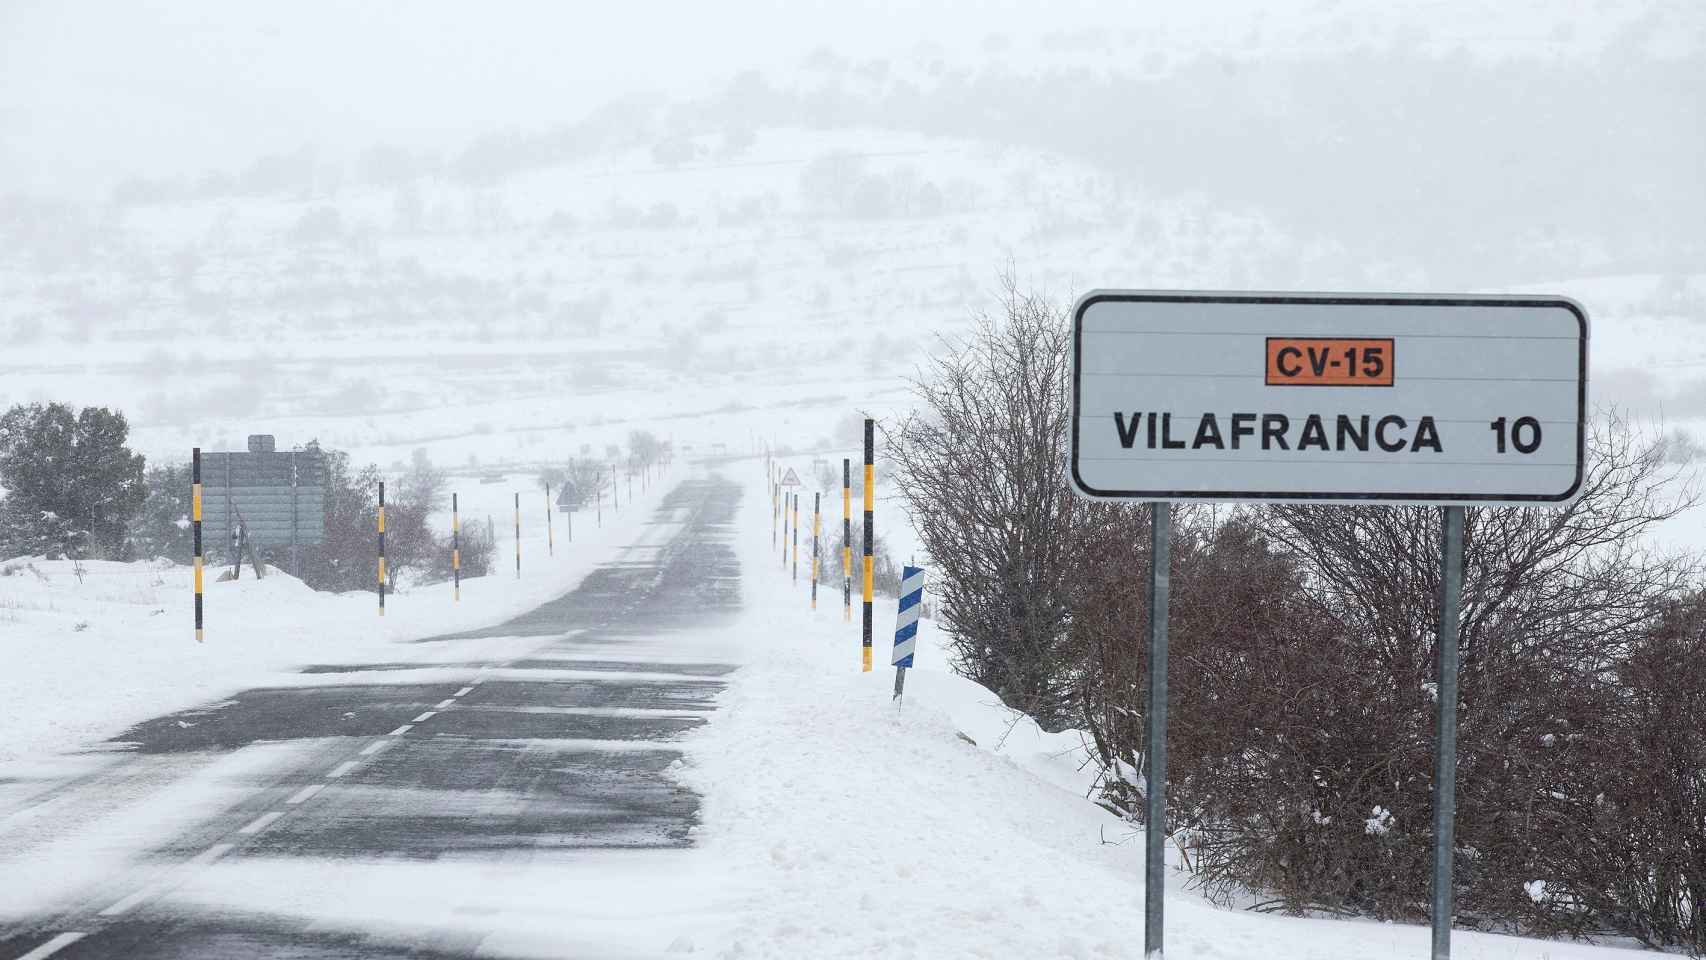 Paisaje nevado en la localidad de Vilafranca, Castellón, afectada por el temporal.